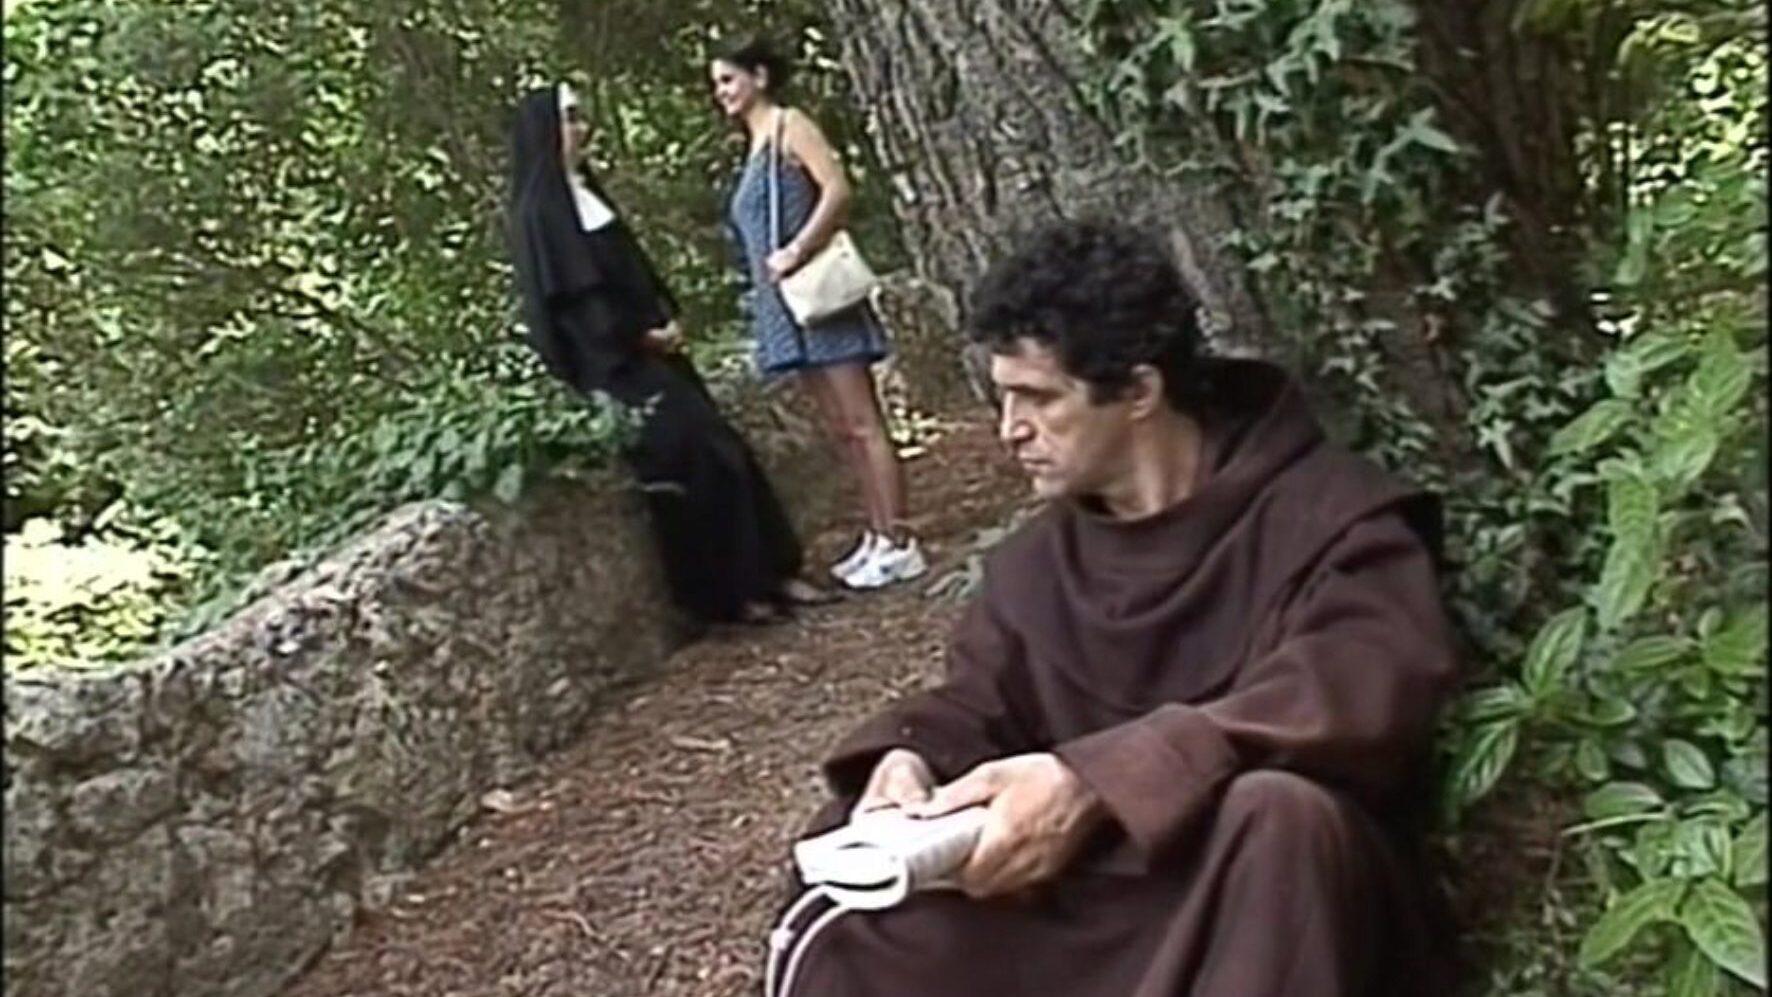 chiesa: călugărițe obraznice și video porno erotica de epocă - xhamster urmărește clipul chiesa tube romp gratuit pentru toți pe xhamster, cu cea mai sexy colecție de călugărițe obraznice italiene și vignete de epotografie HD porno vintage